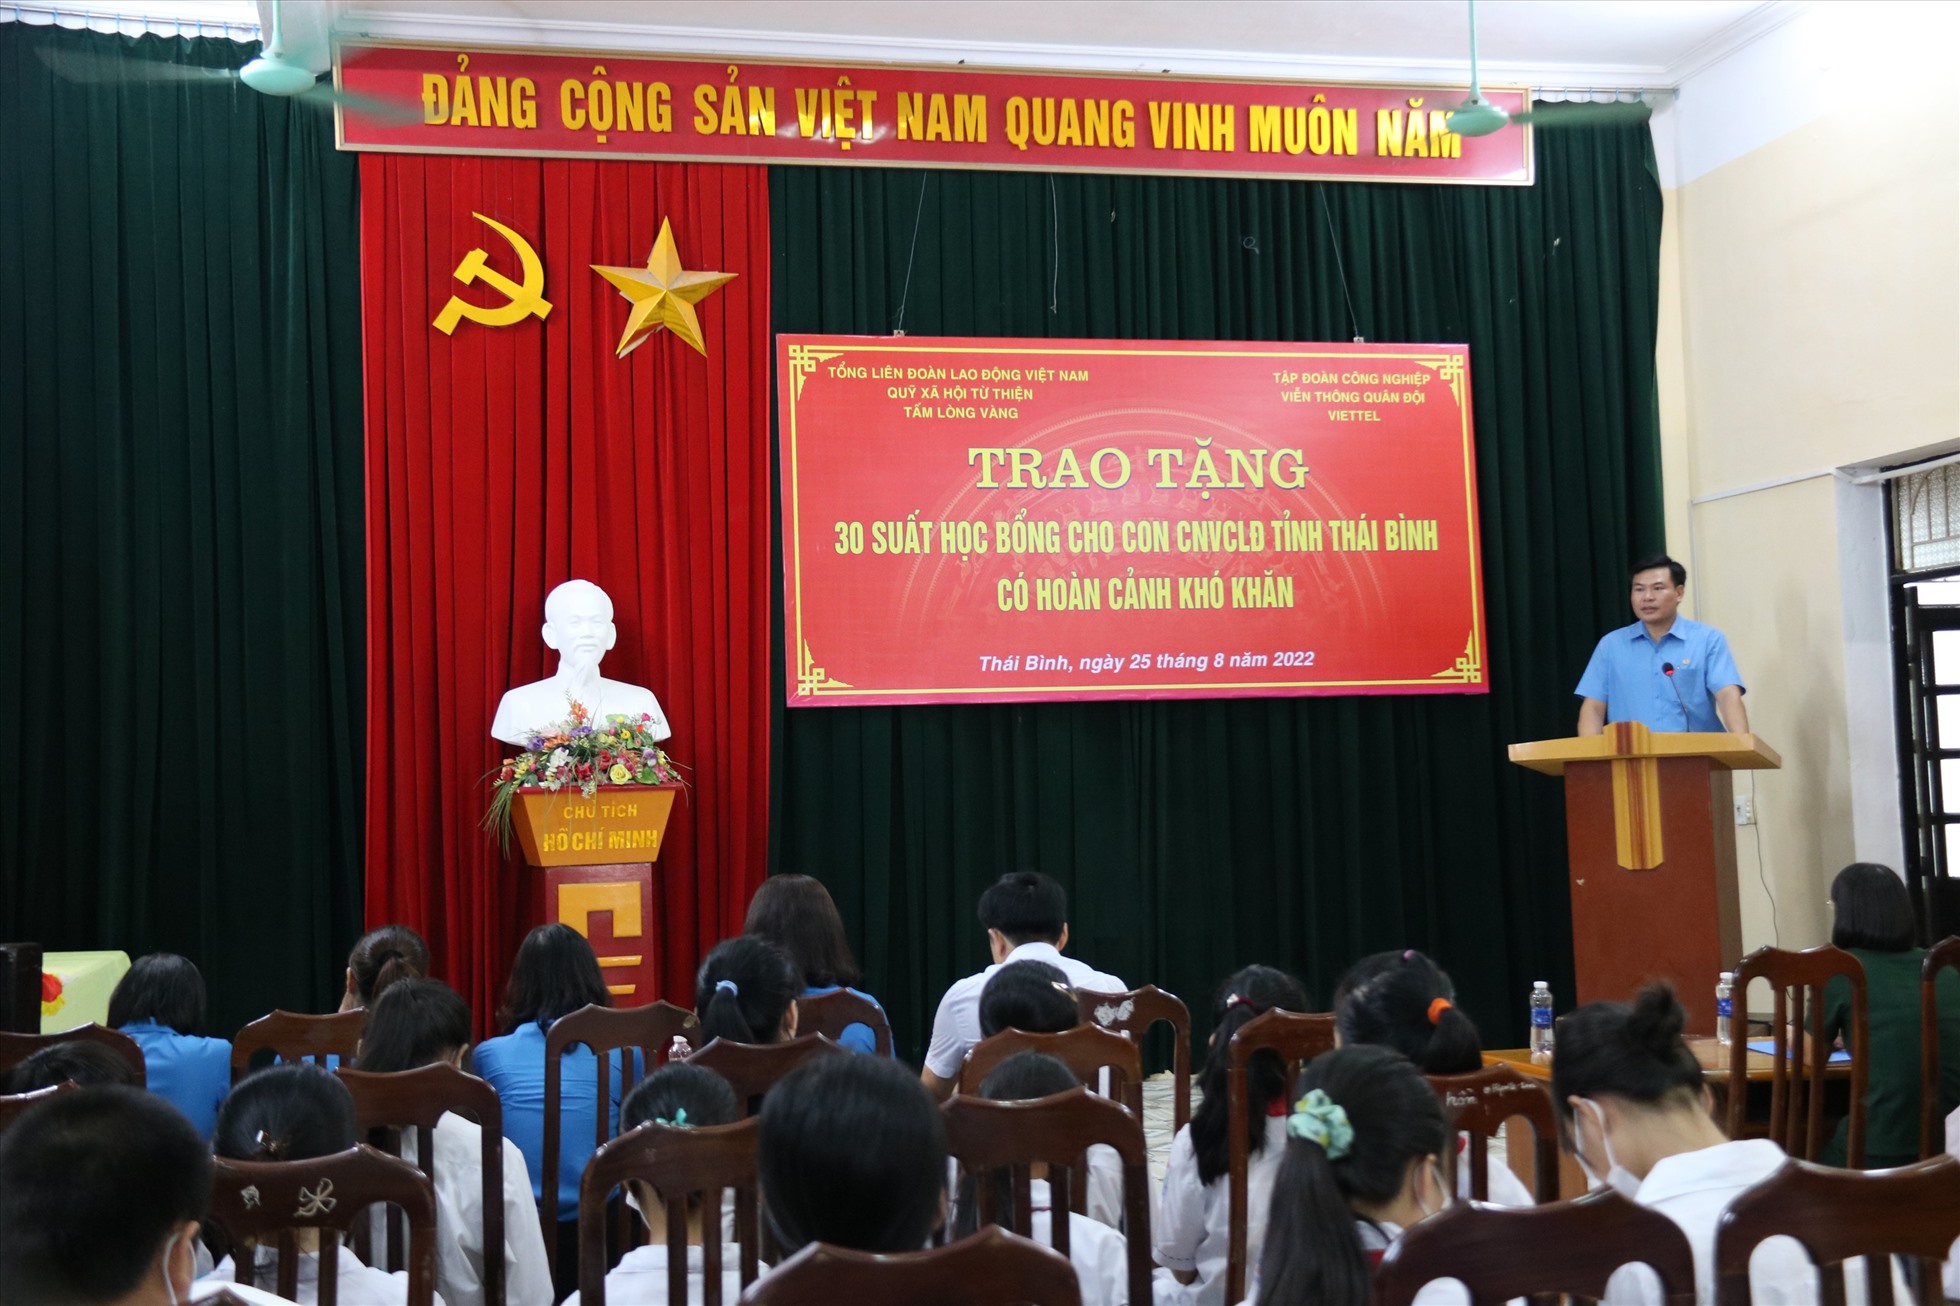 Ông Trần Đức Hiền - Chủ tịch Công đoàn các Khu công nghiệp tỉnh Thái Bình phát biểu tại chương trình. Ảnh: B.M